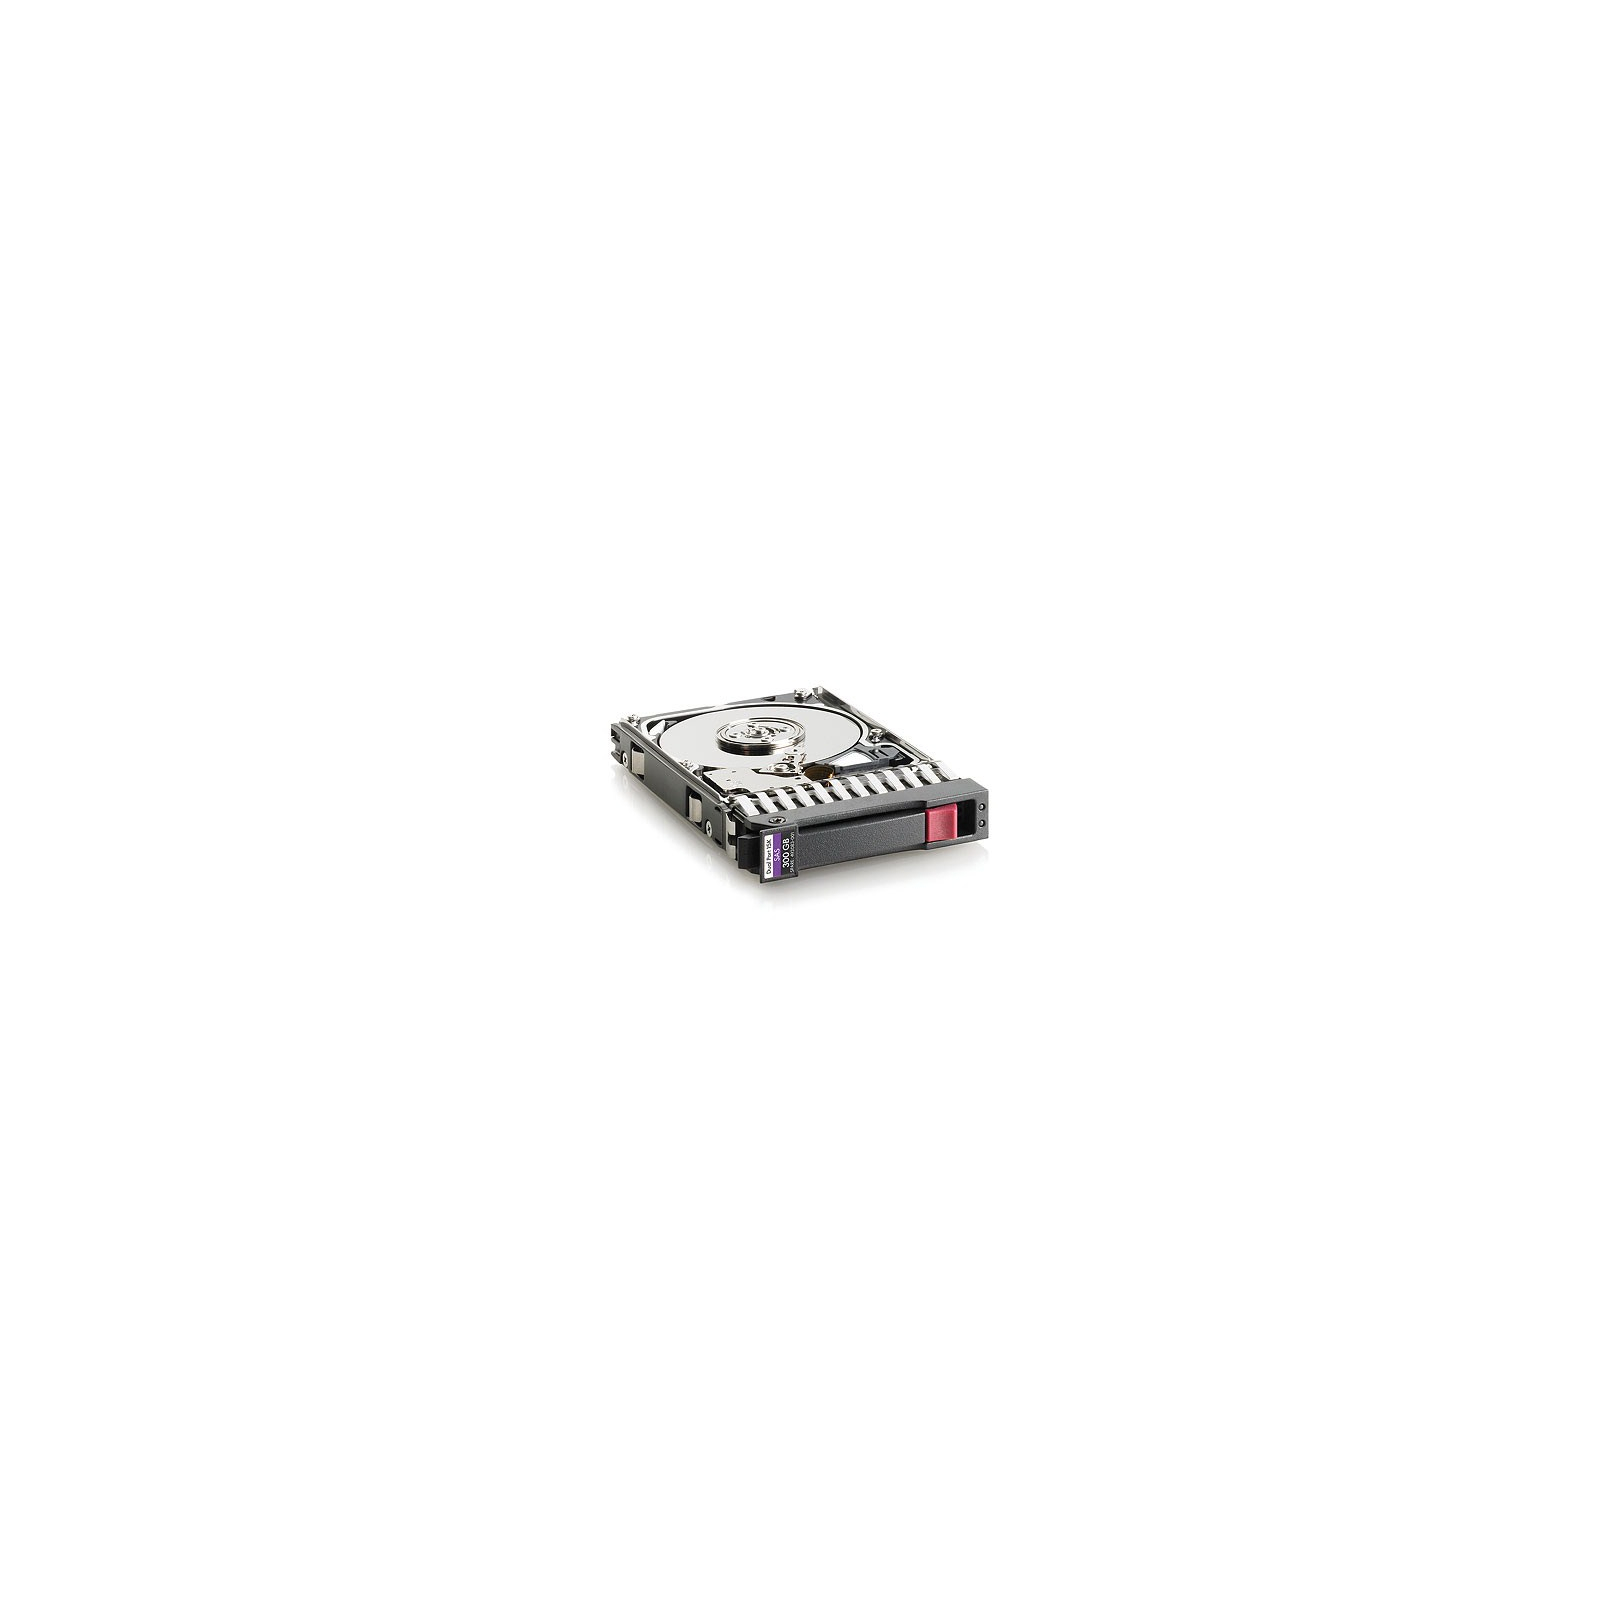 Жорсткий диск для сервера HP 300GB (507127-B21)